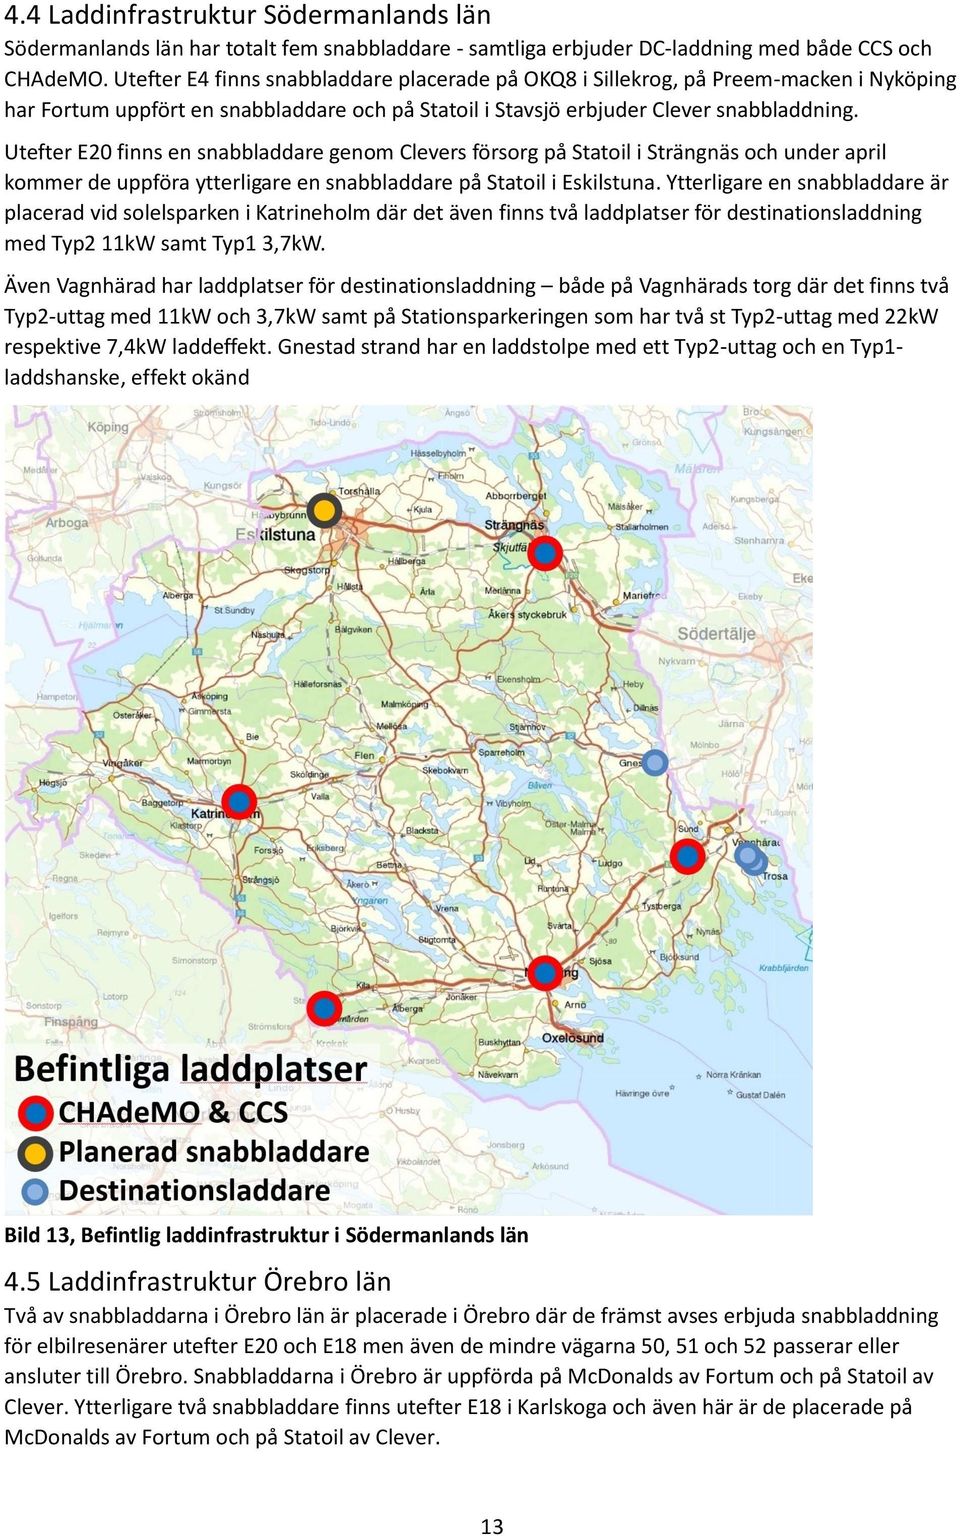 Utefter E20 finns en snabbladdare genom Clevers försorg på Statoil i Strängnäs och under april kommer de uppföra ytterligare en snabbladdare på Statoil i Eskilstuna.